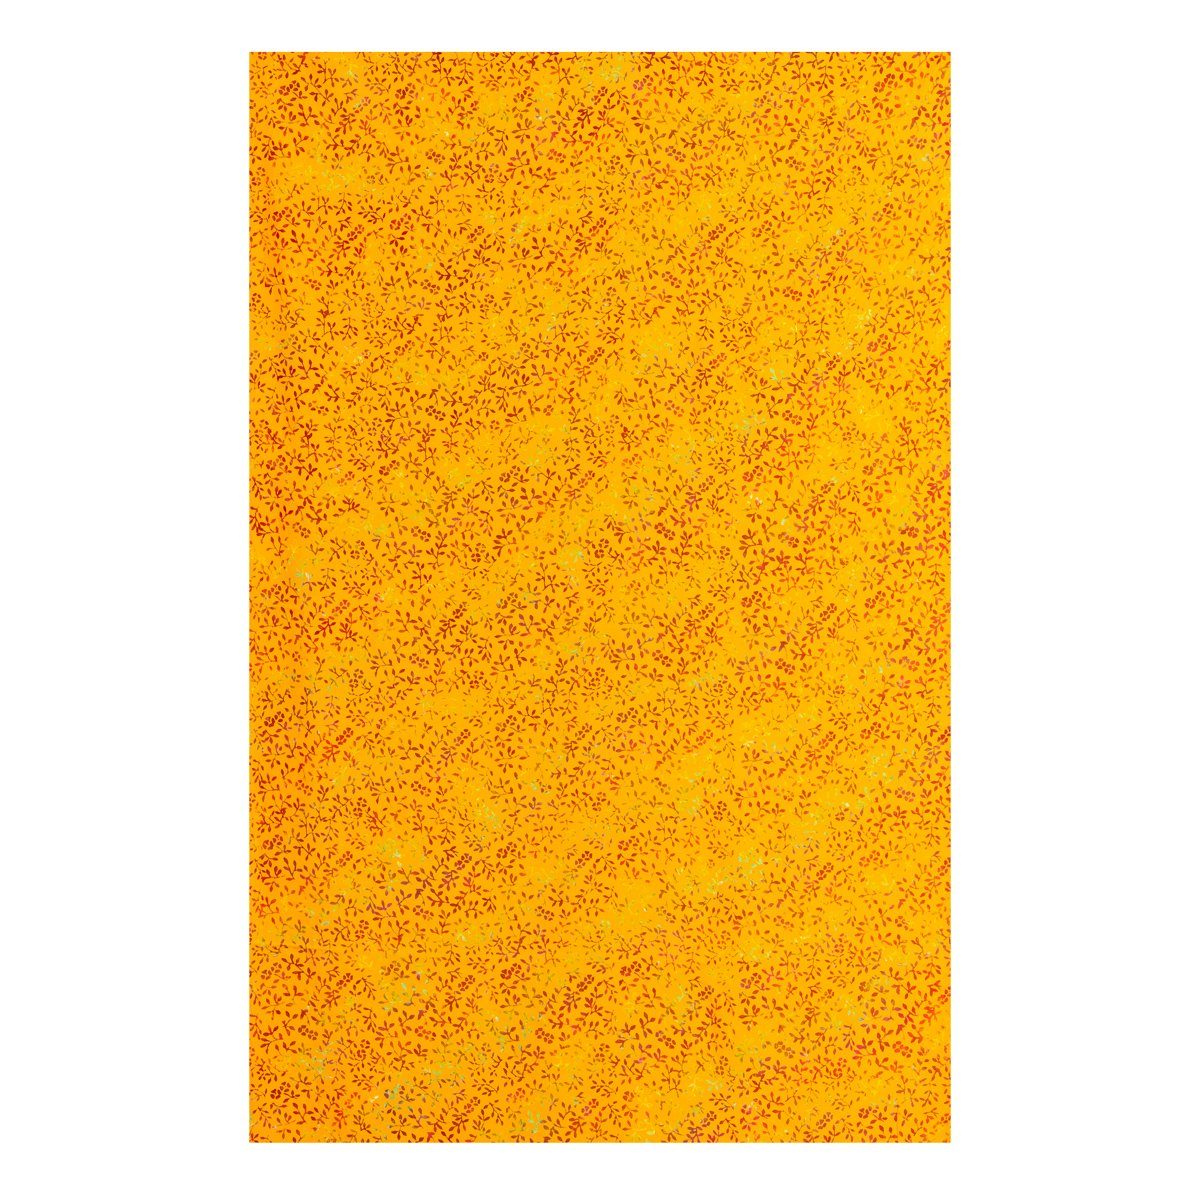 PANASIAM Halstuch leaf Viskose orange weicher ob für egal Strandtuch B303 Wickelkleid oder jede aus Wachsbatik Schultertuch, Schal als Sarong Jahreszeit wunderbar